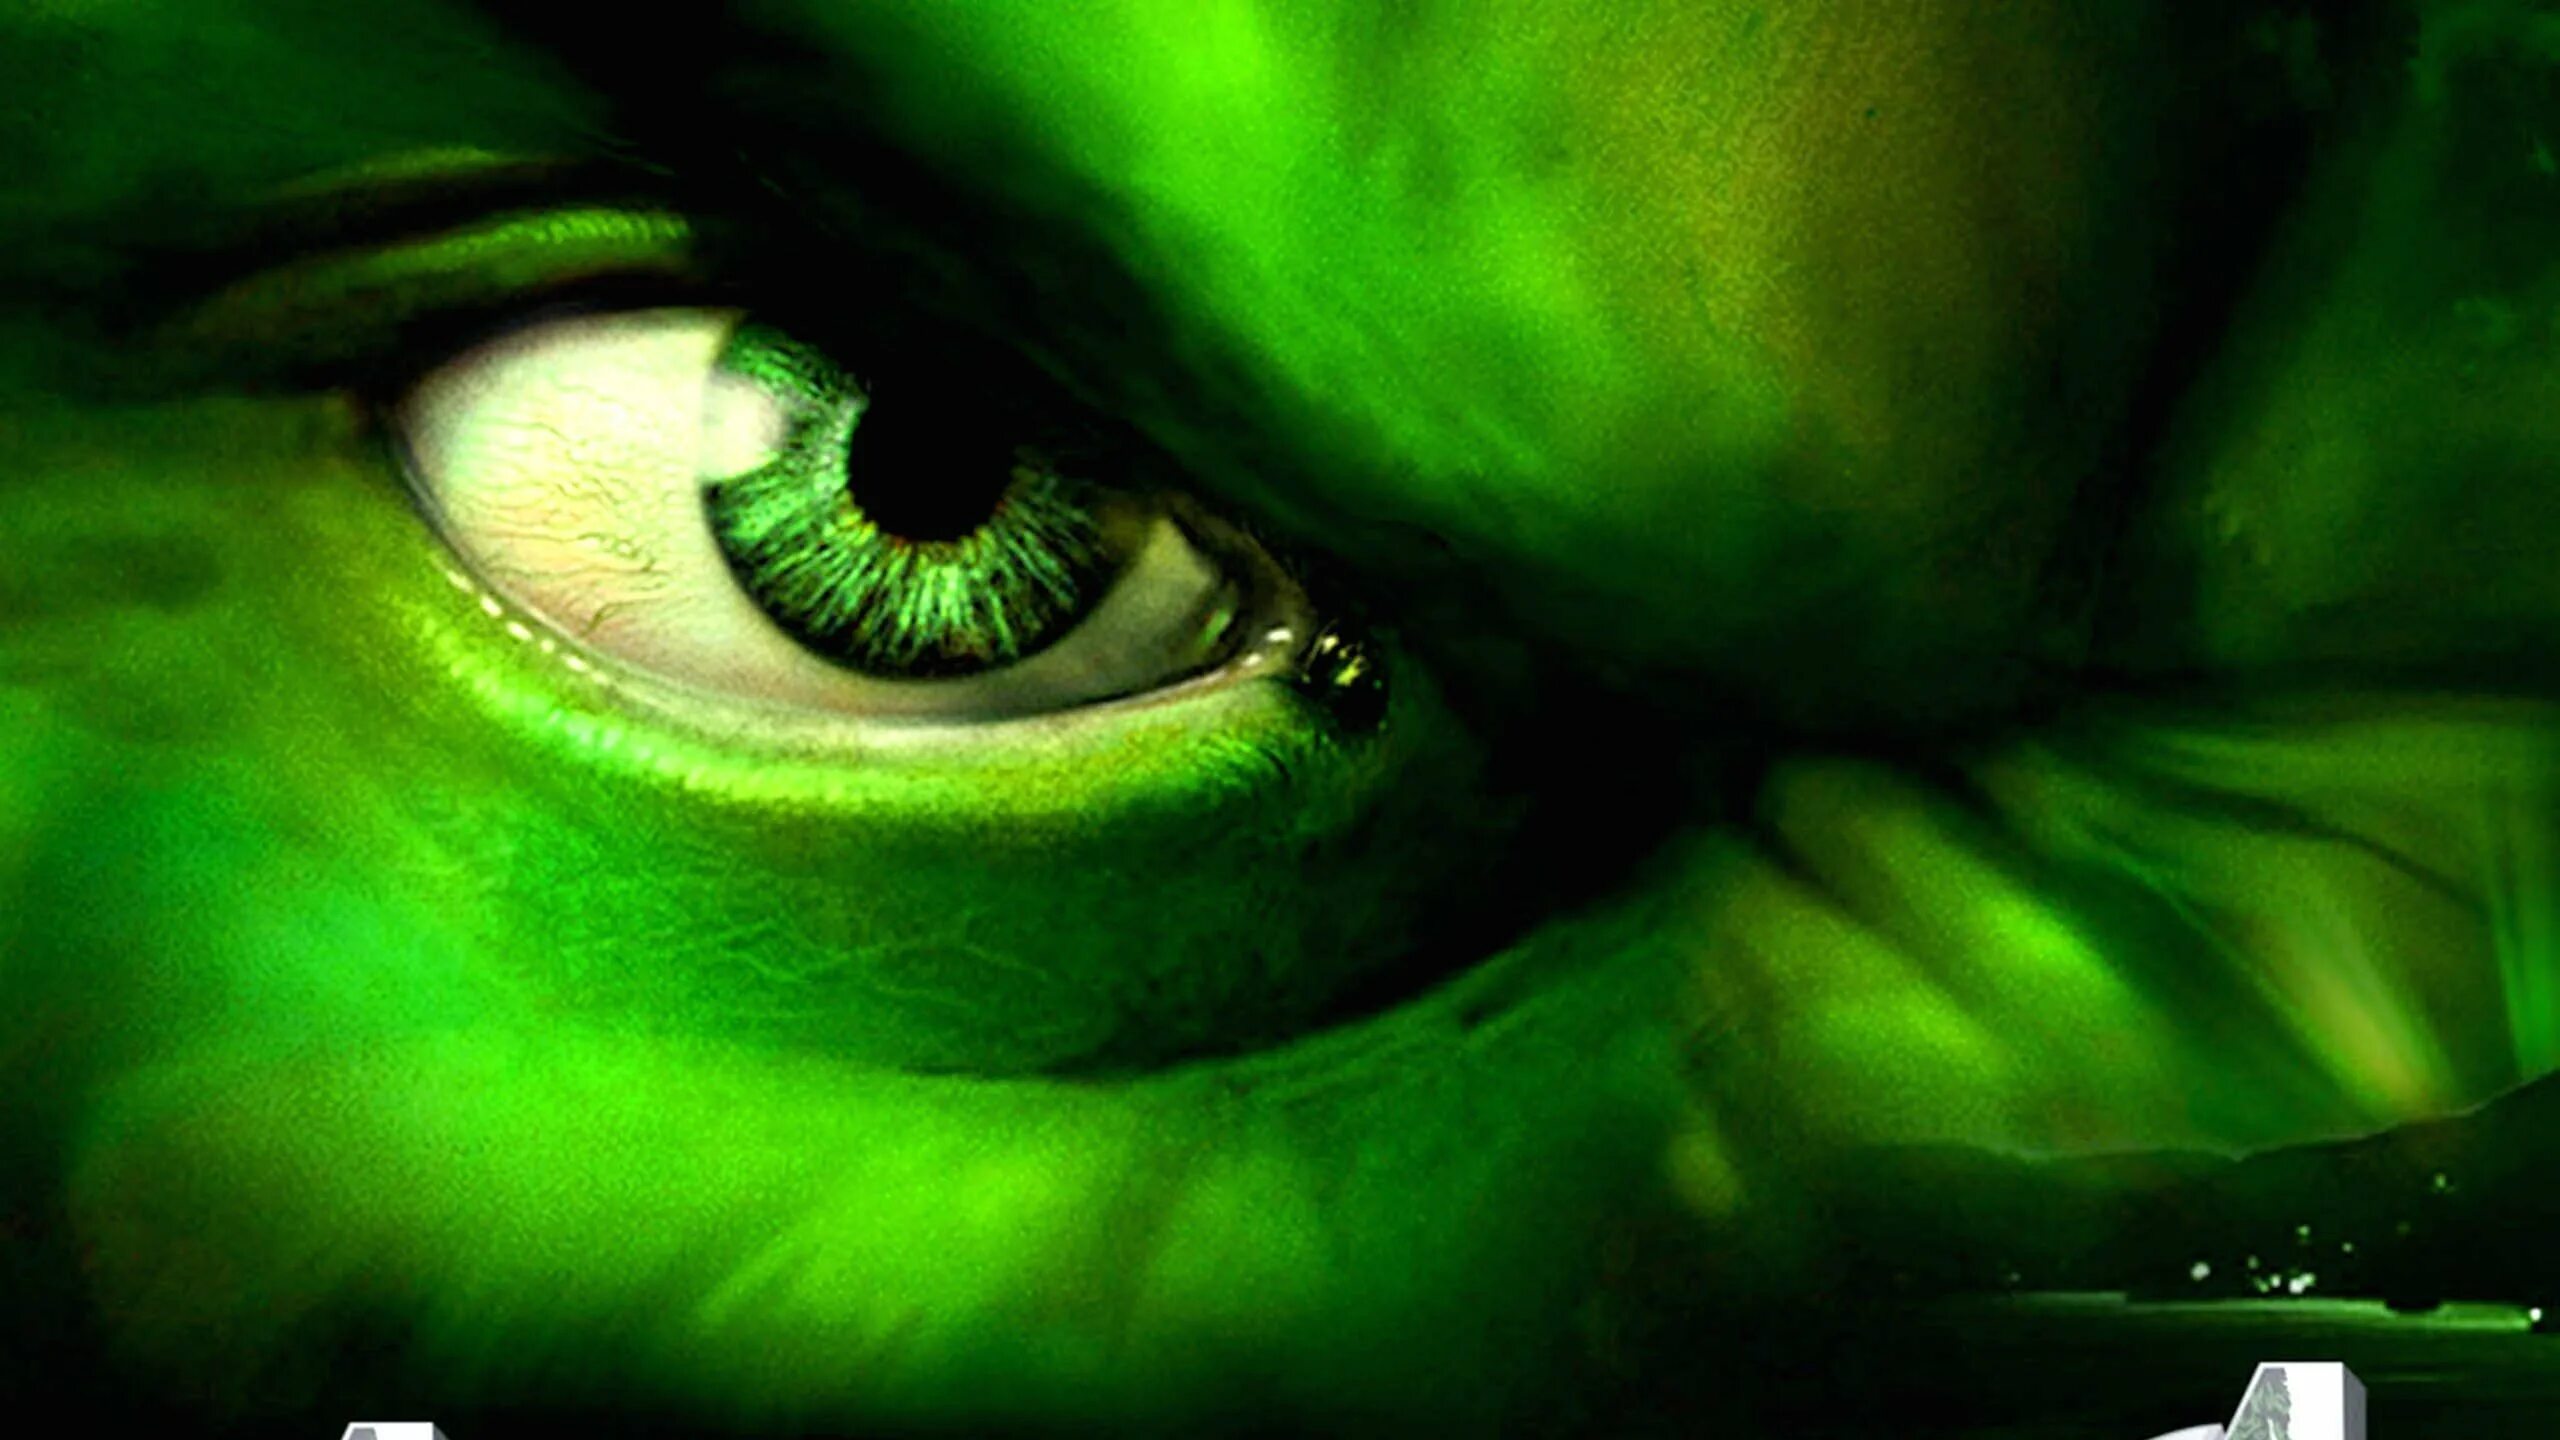 Халк обои на рабочий стол 1920х1080. Зеленый Халк зеленый Халк. Чудовище с зелеными глазами. Глаза Халка. Зеленый спой